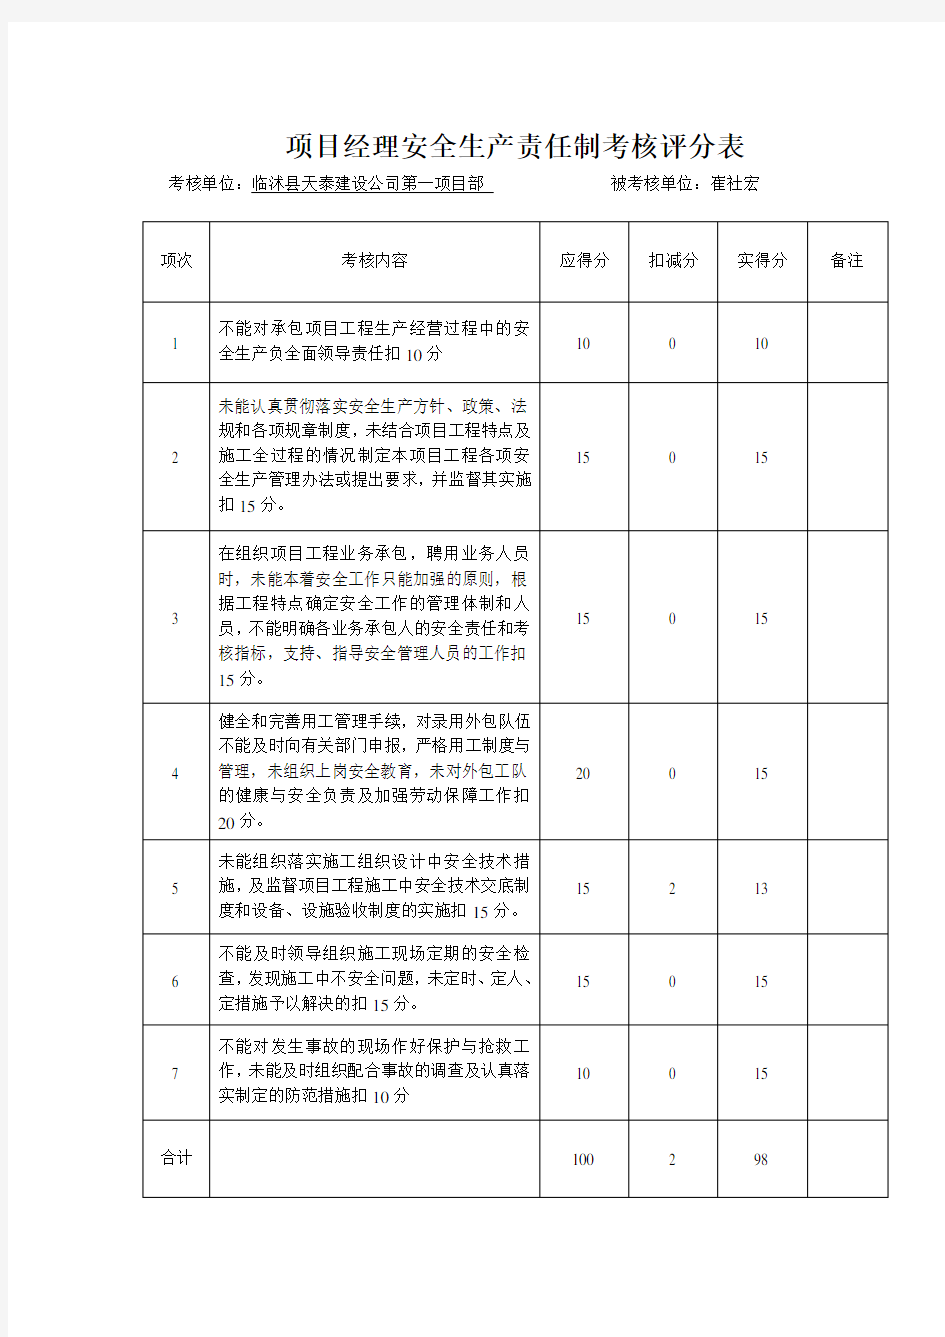 05-2管理人员安全生产责任制考核表